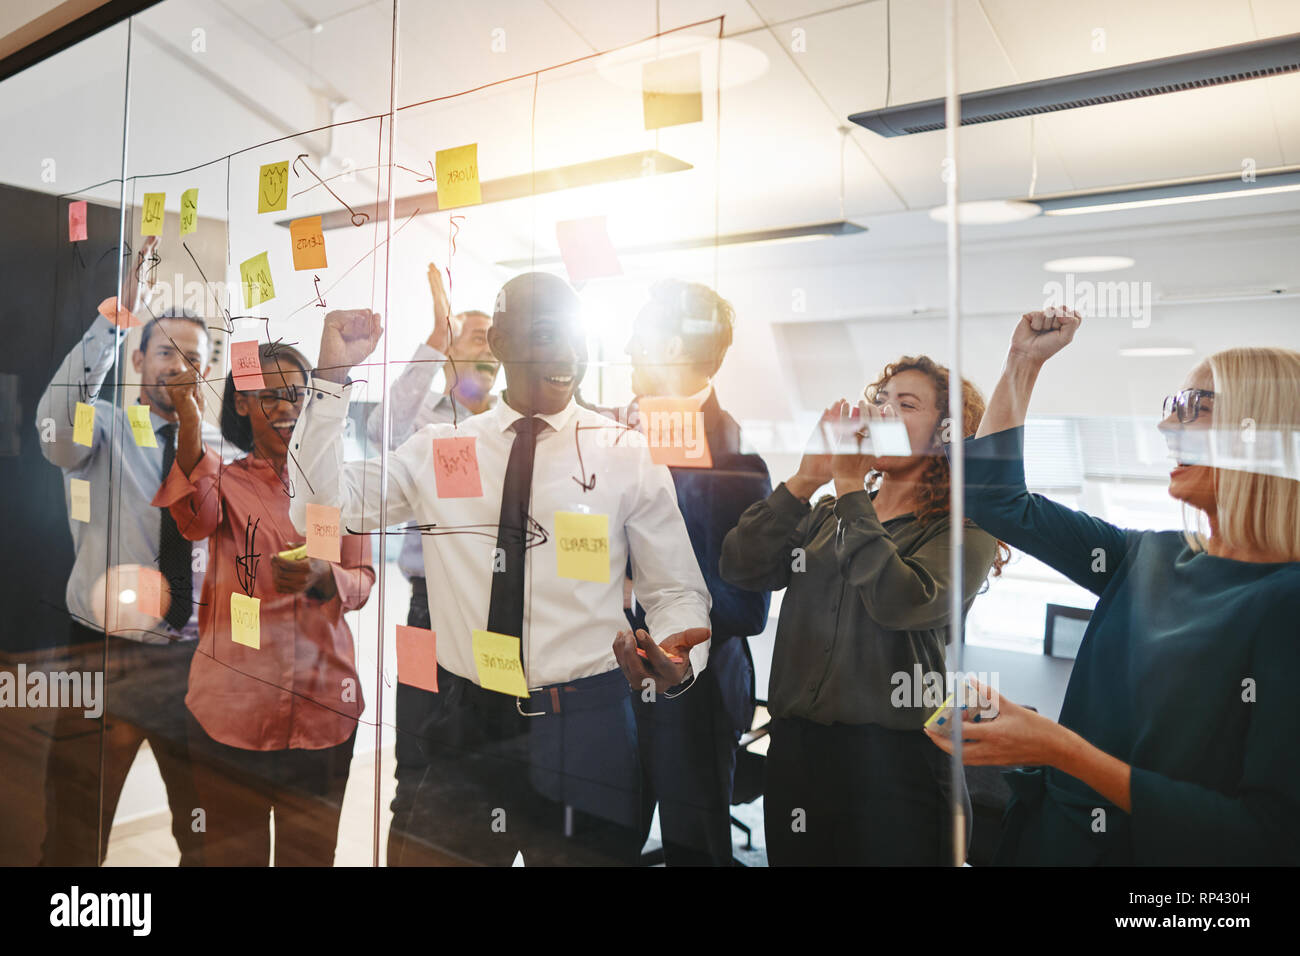 Diversi gruppi di imprenditori estatica celebrando e alta fiving insieme durante il brainstorming su una parete di vetro in un ufficio moderno Foto Stock